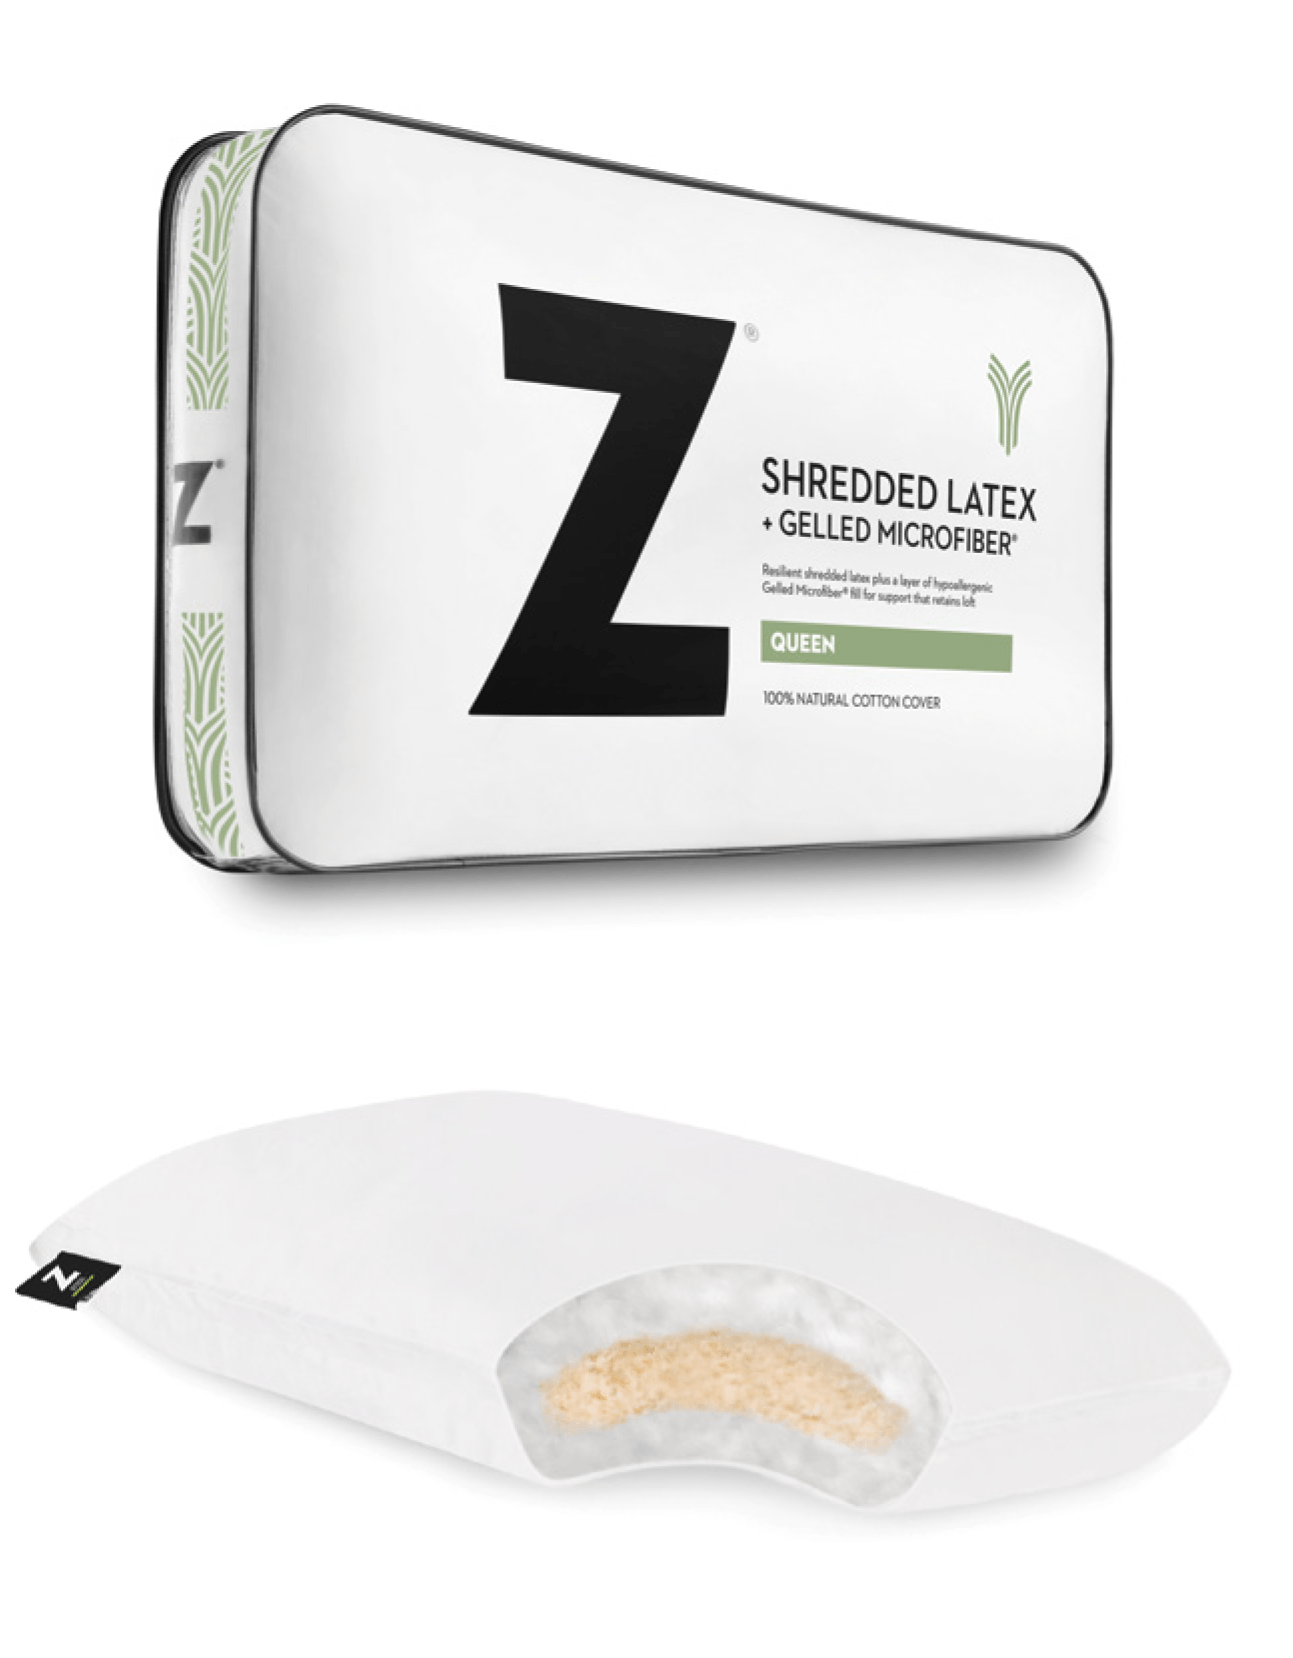 Shredded Latex + Gelled Microfiber Pillow